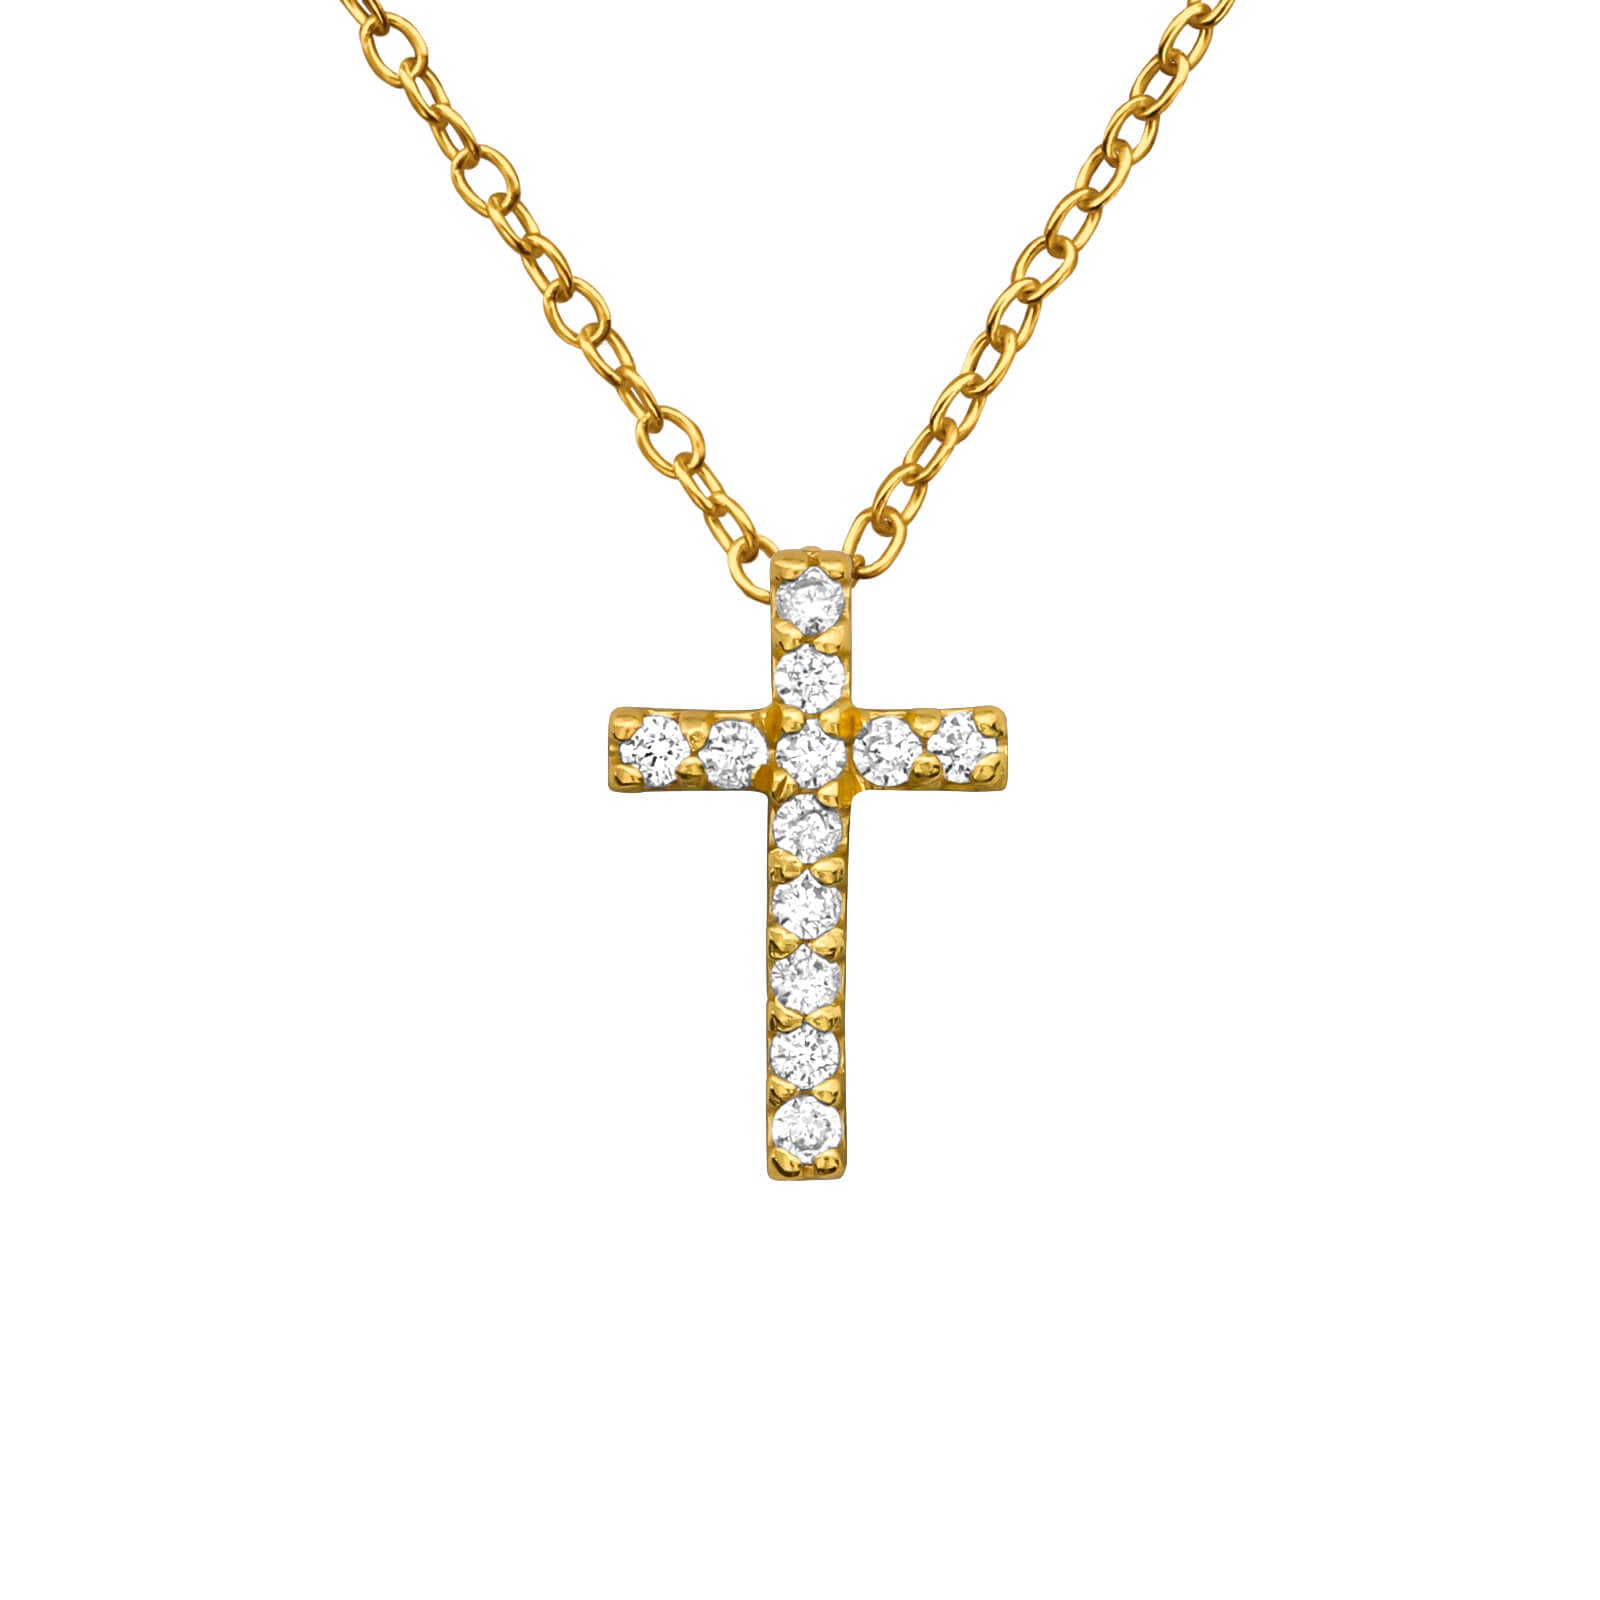 ketting goud kruisje communie meisje geschenk communiecadeau detail kruisje kristallen